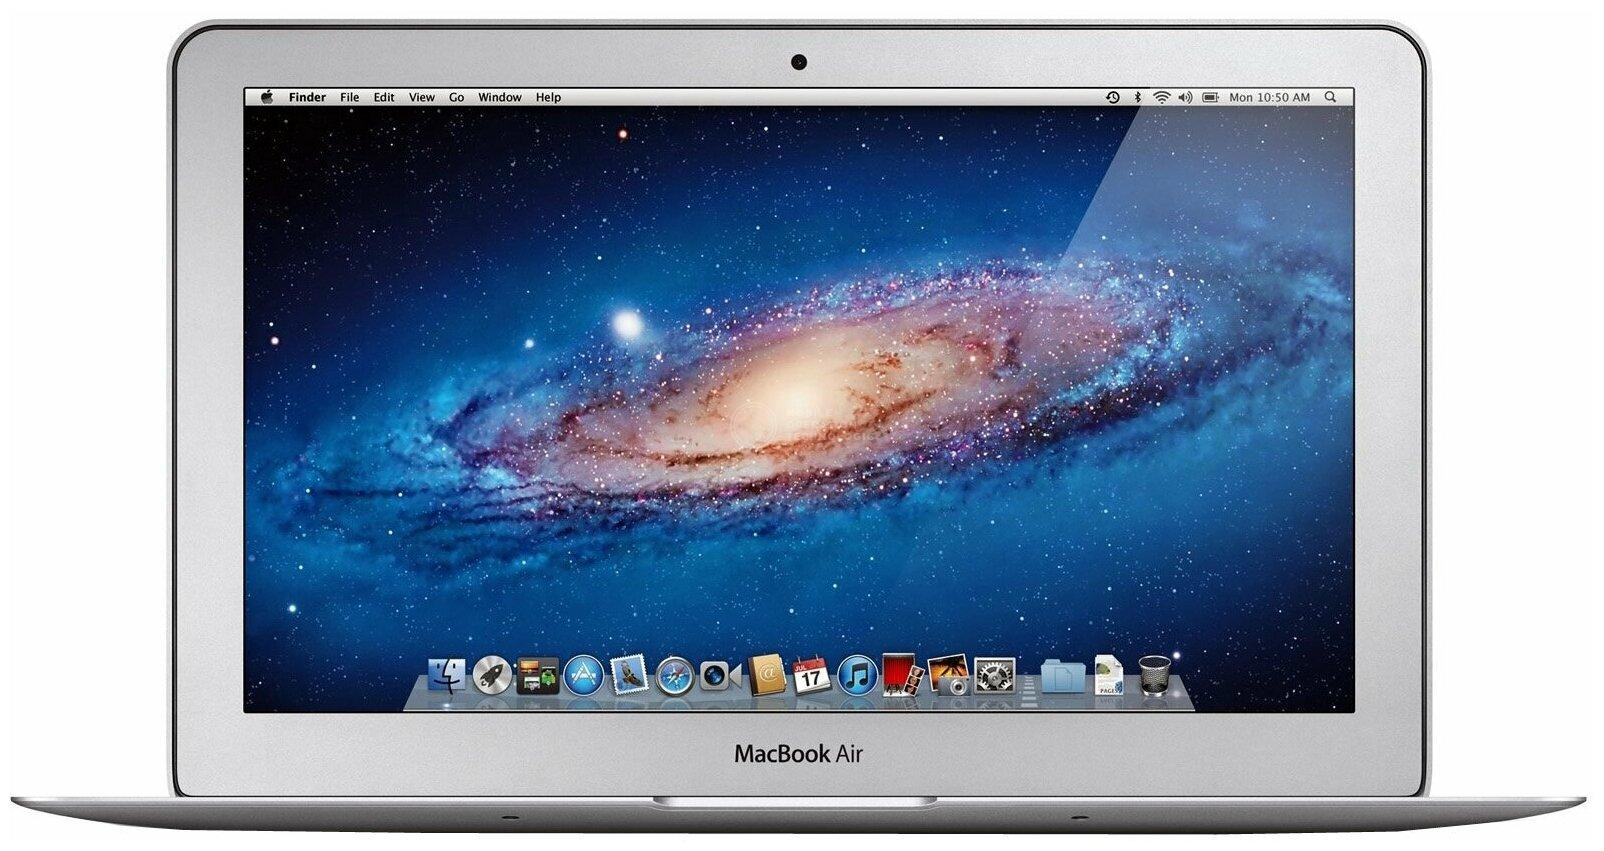 MacBook Air 11 Mid 2013 MD711*/A